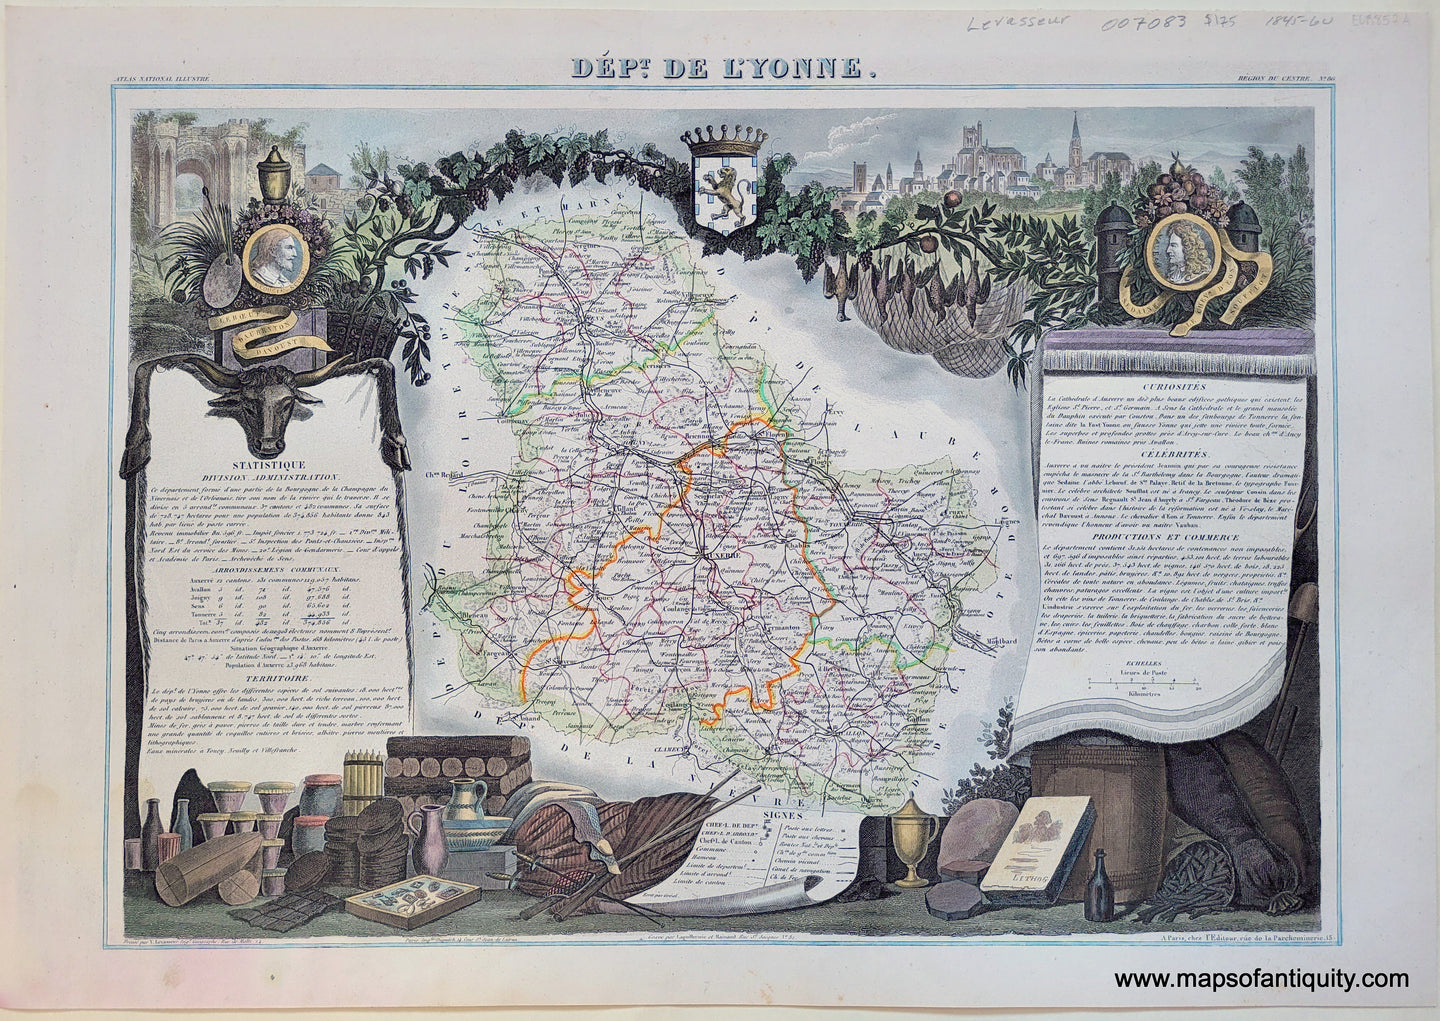 Antique-Hand-Colored-Map-Dept.-de-L'yonne-France-Europe-France-1851-Levasseur-Maps-Of-Antiquity